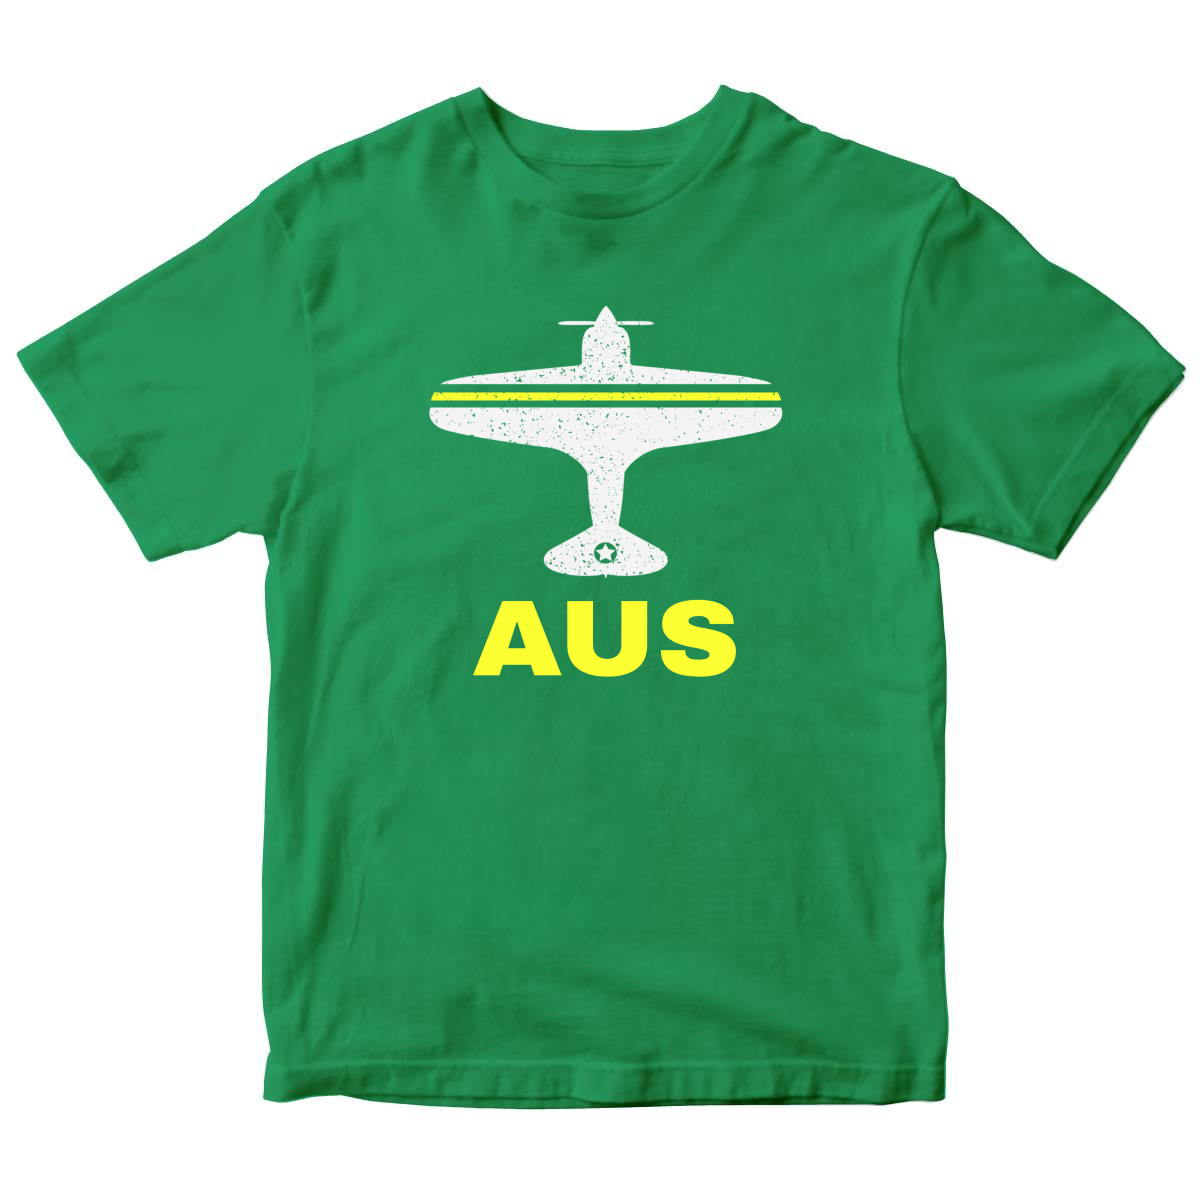 Fly Austin AUS Airport Kids T-shirt